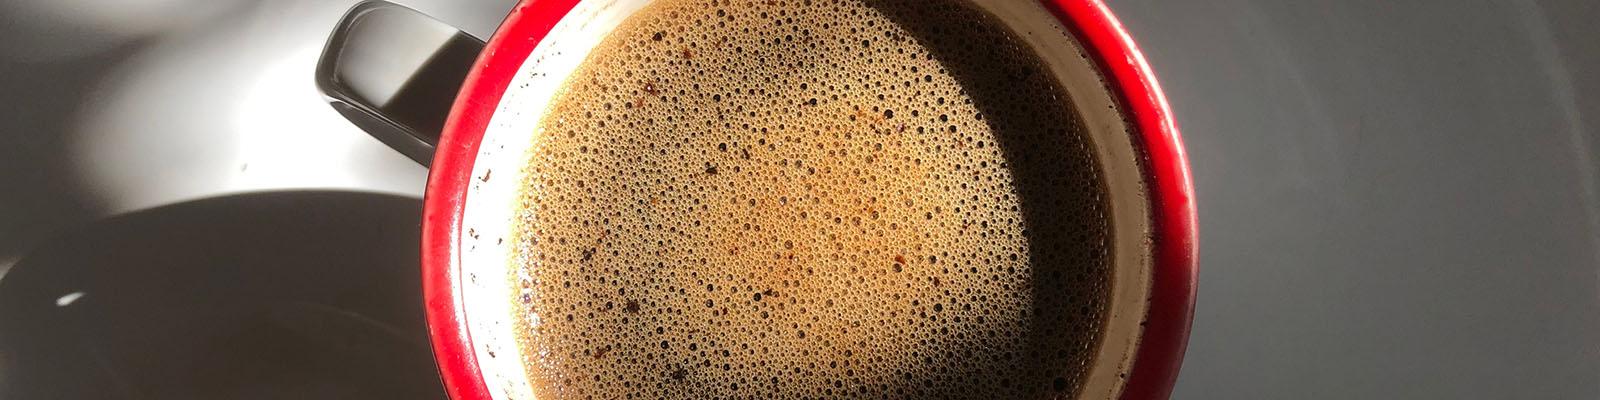 cara membuat kopi tubruk di rumah